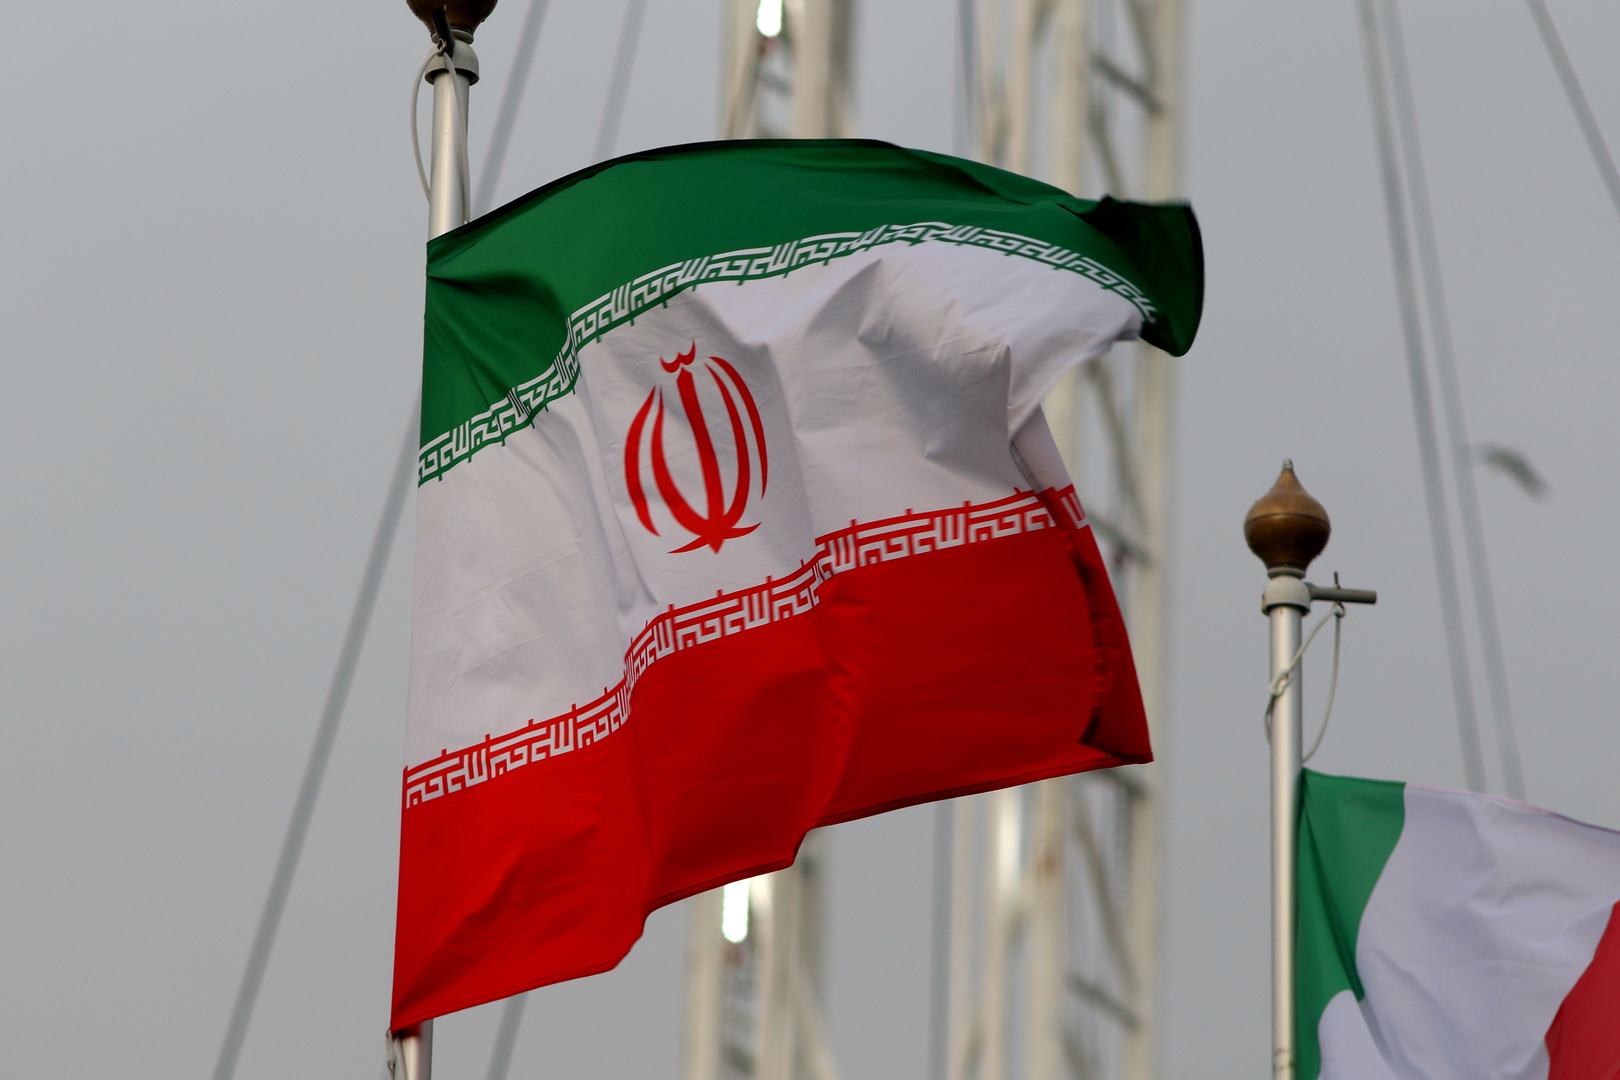 طهران توجه رسالة إلى مجلس الأمن تتعلق بالهجوم الأخير على جنوب شرق إيران